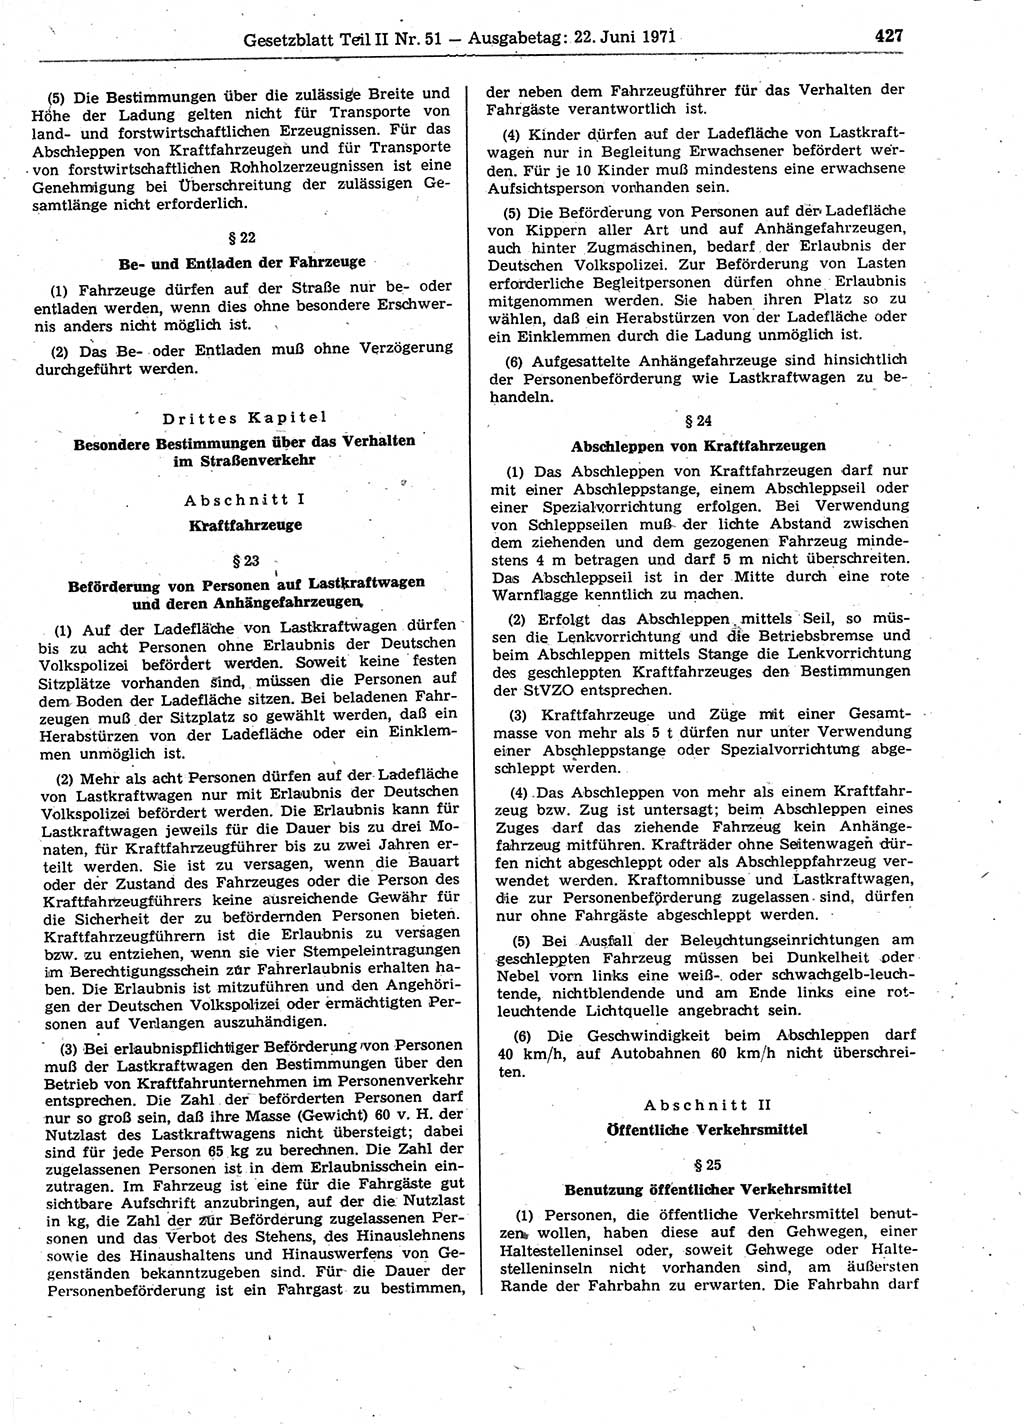 Gesetzblatt (GBl.) der Deutschen Demokratischen Republik (DDR) Teil ⅠⅠ 1971, Seite 427 (GBl. DDR ⅠⅠ 1971, S. 427)